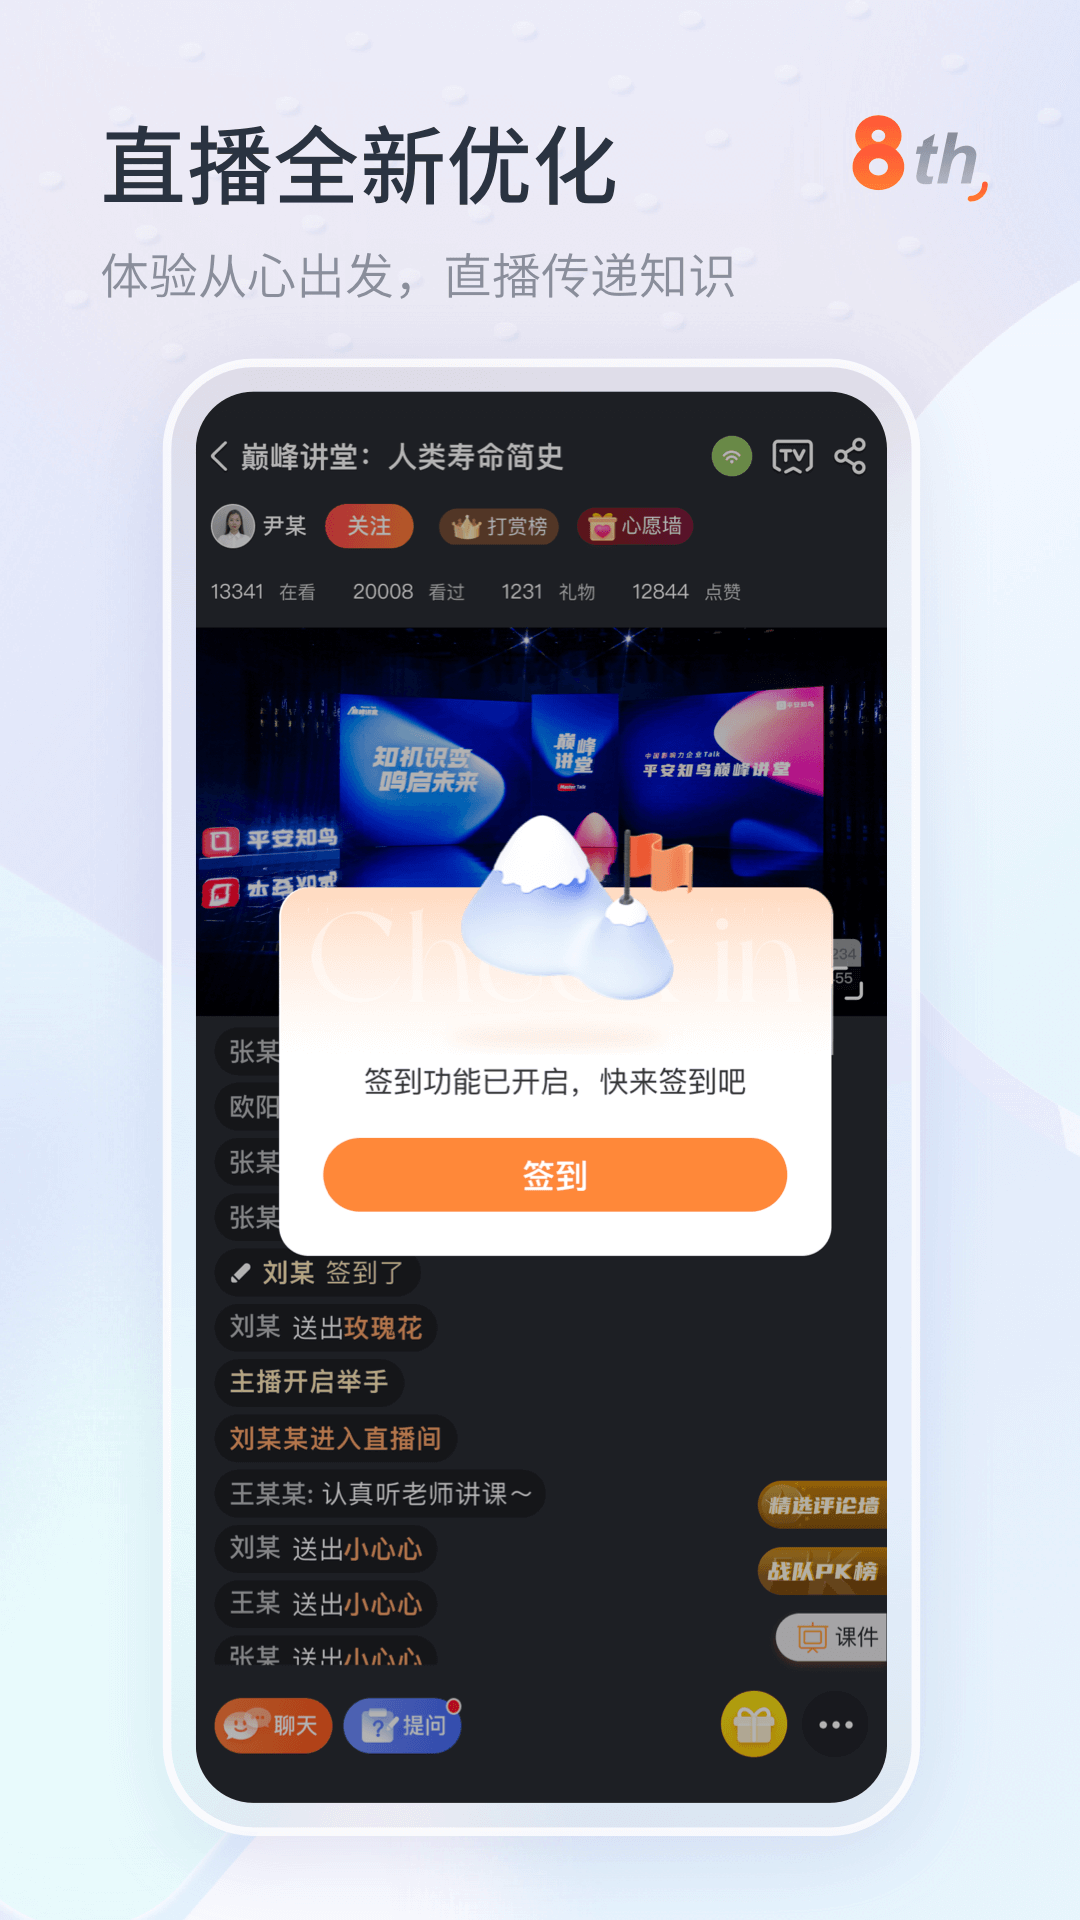 平安知鸟App下载安装 8.0.38.1.3